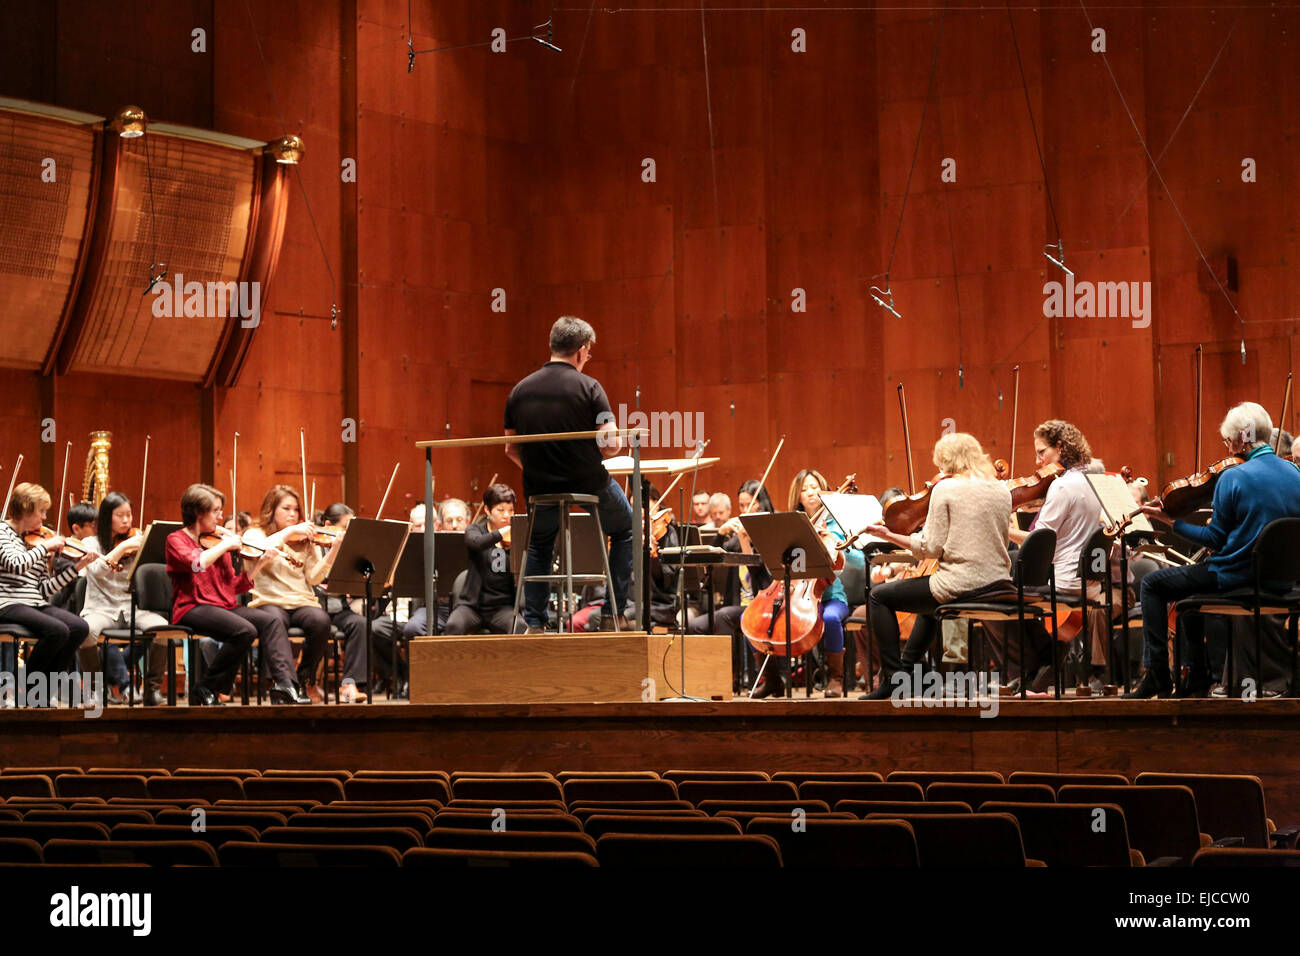 Alan Gilbert la réalisation d'une répétition de l'Orchestre philharmonique de New York, l'Avery Fisher Hall, Lincoln Center, New York, USA Banque D'Images